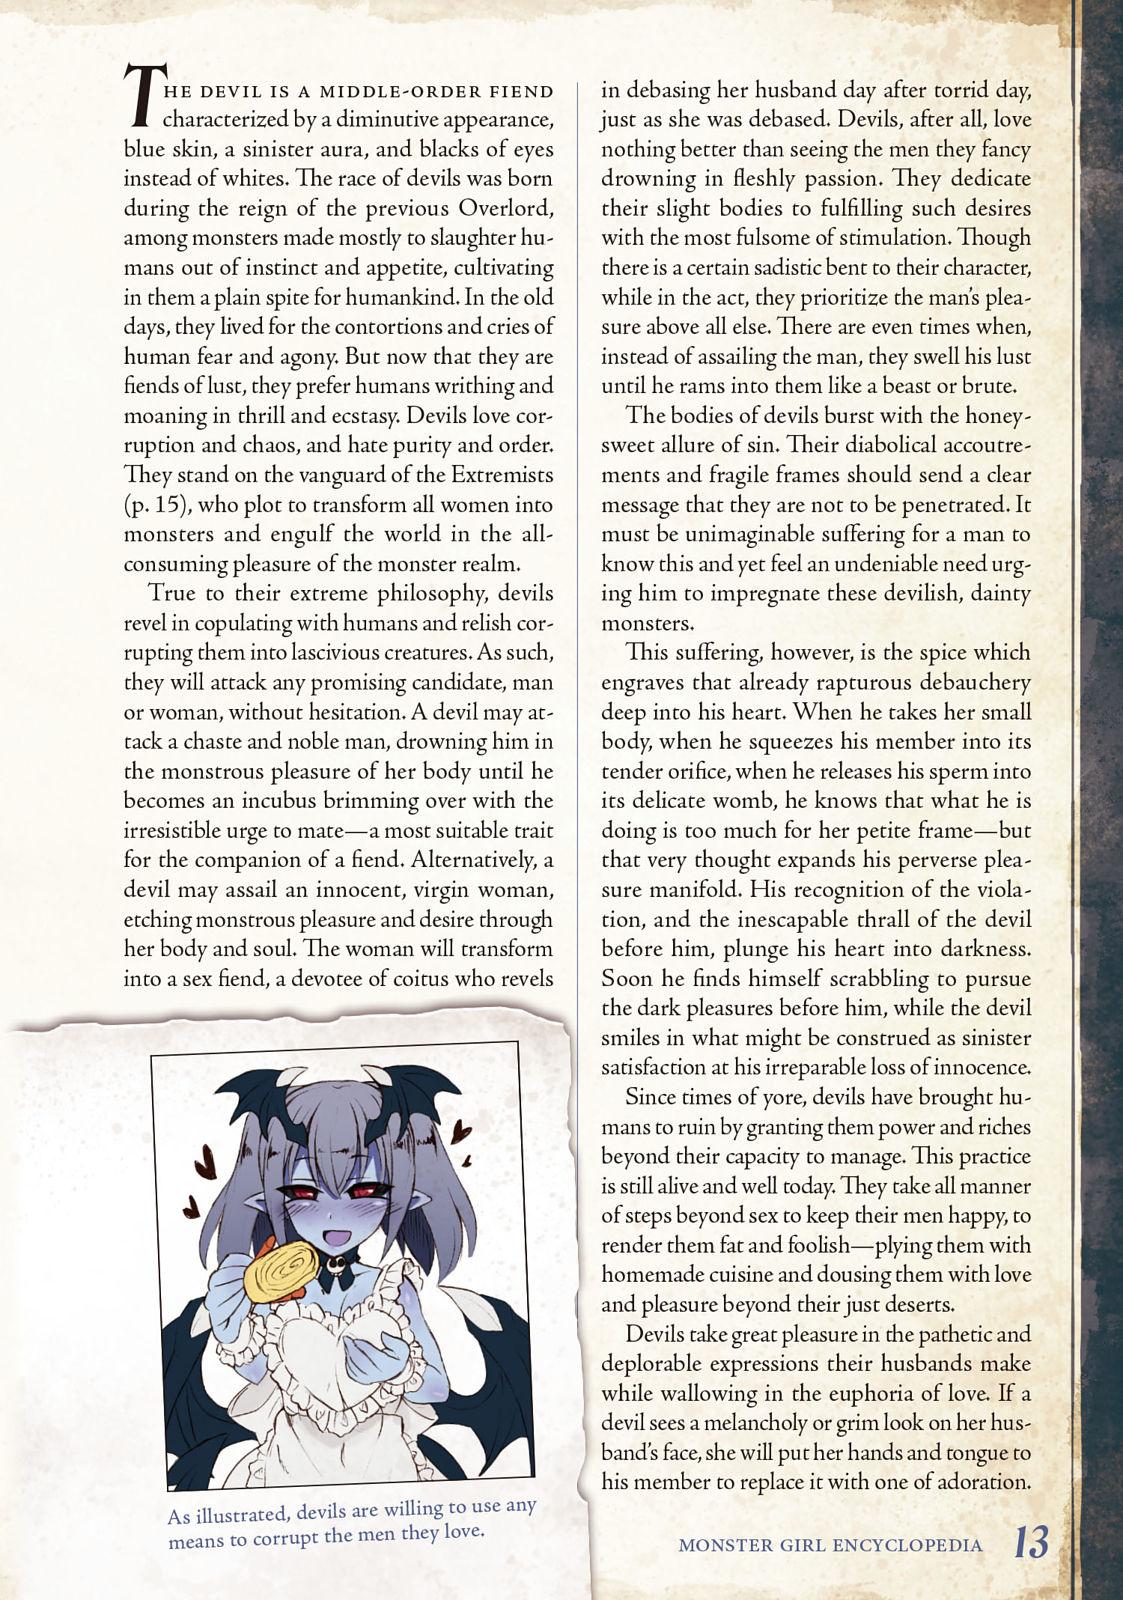 Monster Girl Encyclopedia Vol. 2 13